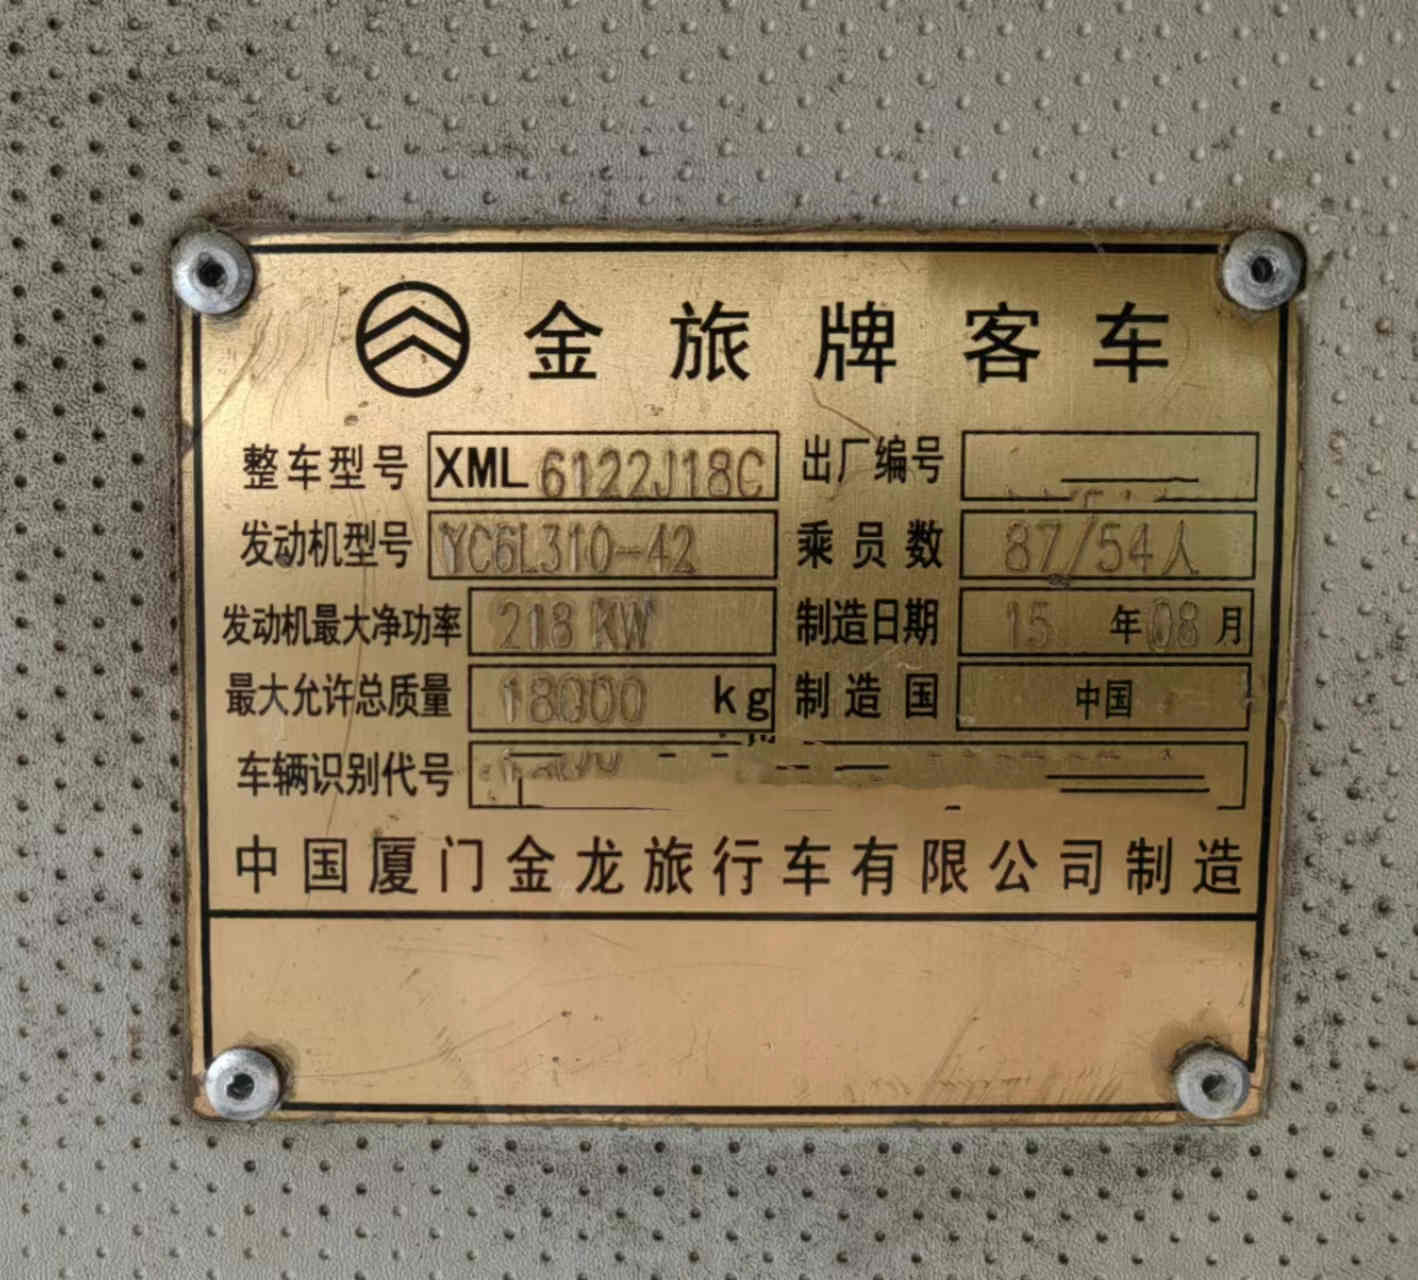 【深圳】2015年9月 12米54座国四有中门金旅6122气囊车 价格6.60万 二手车